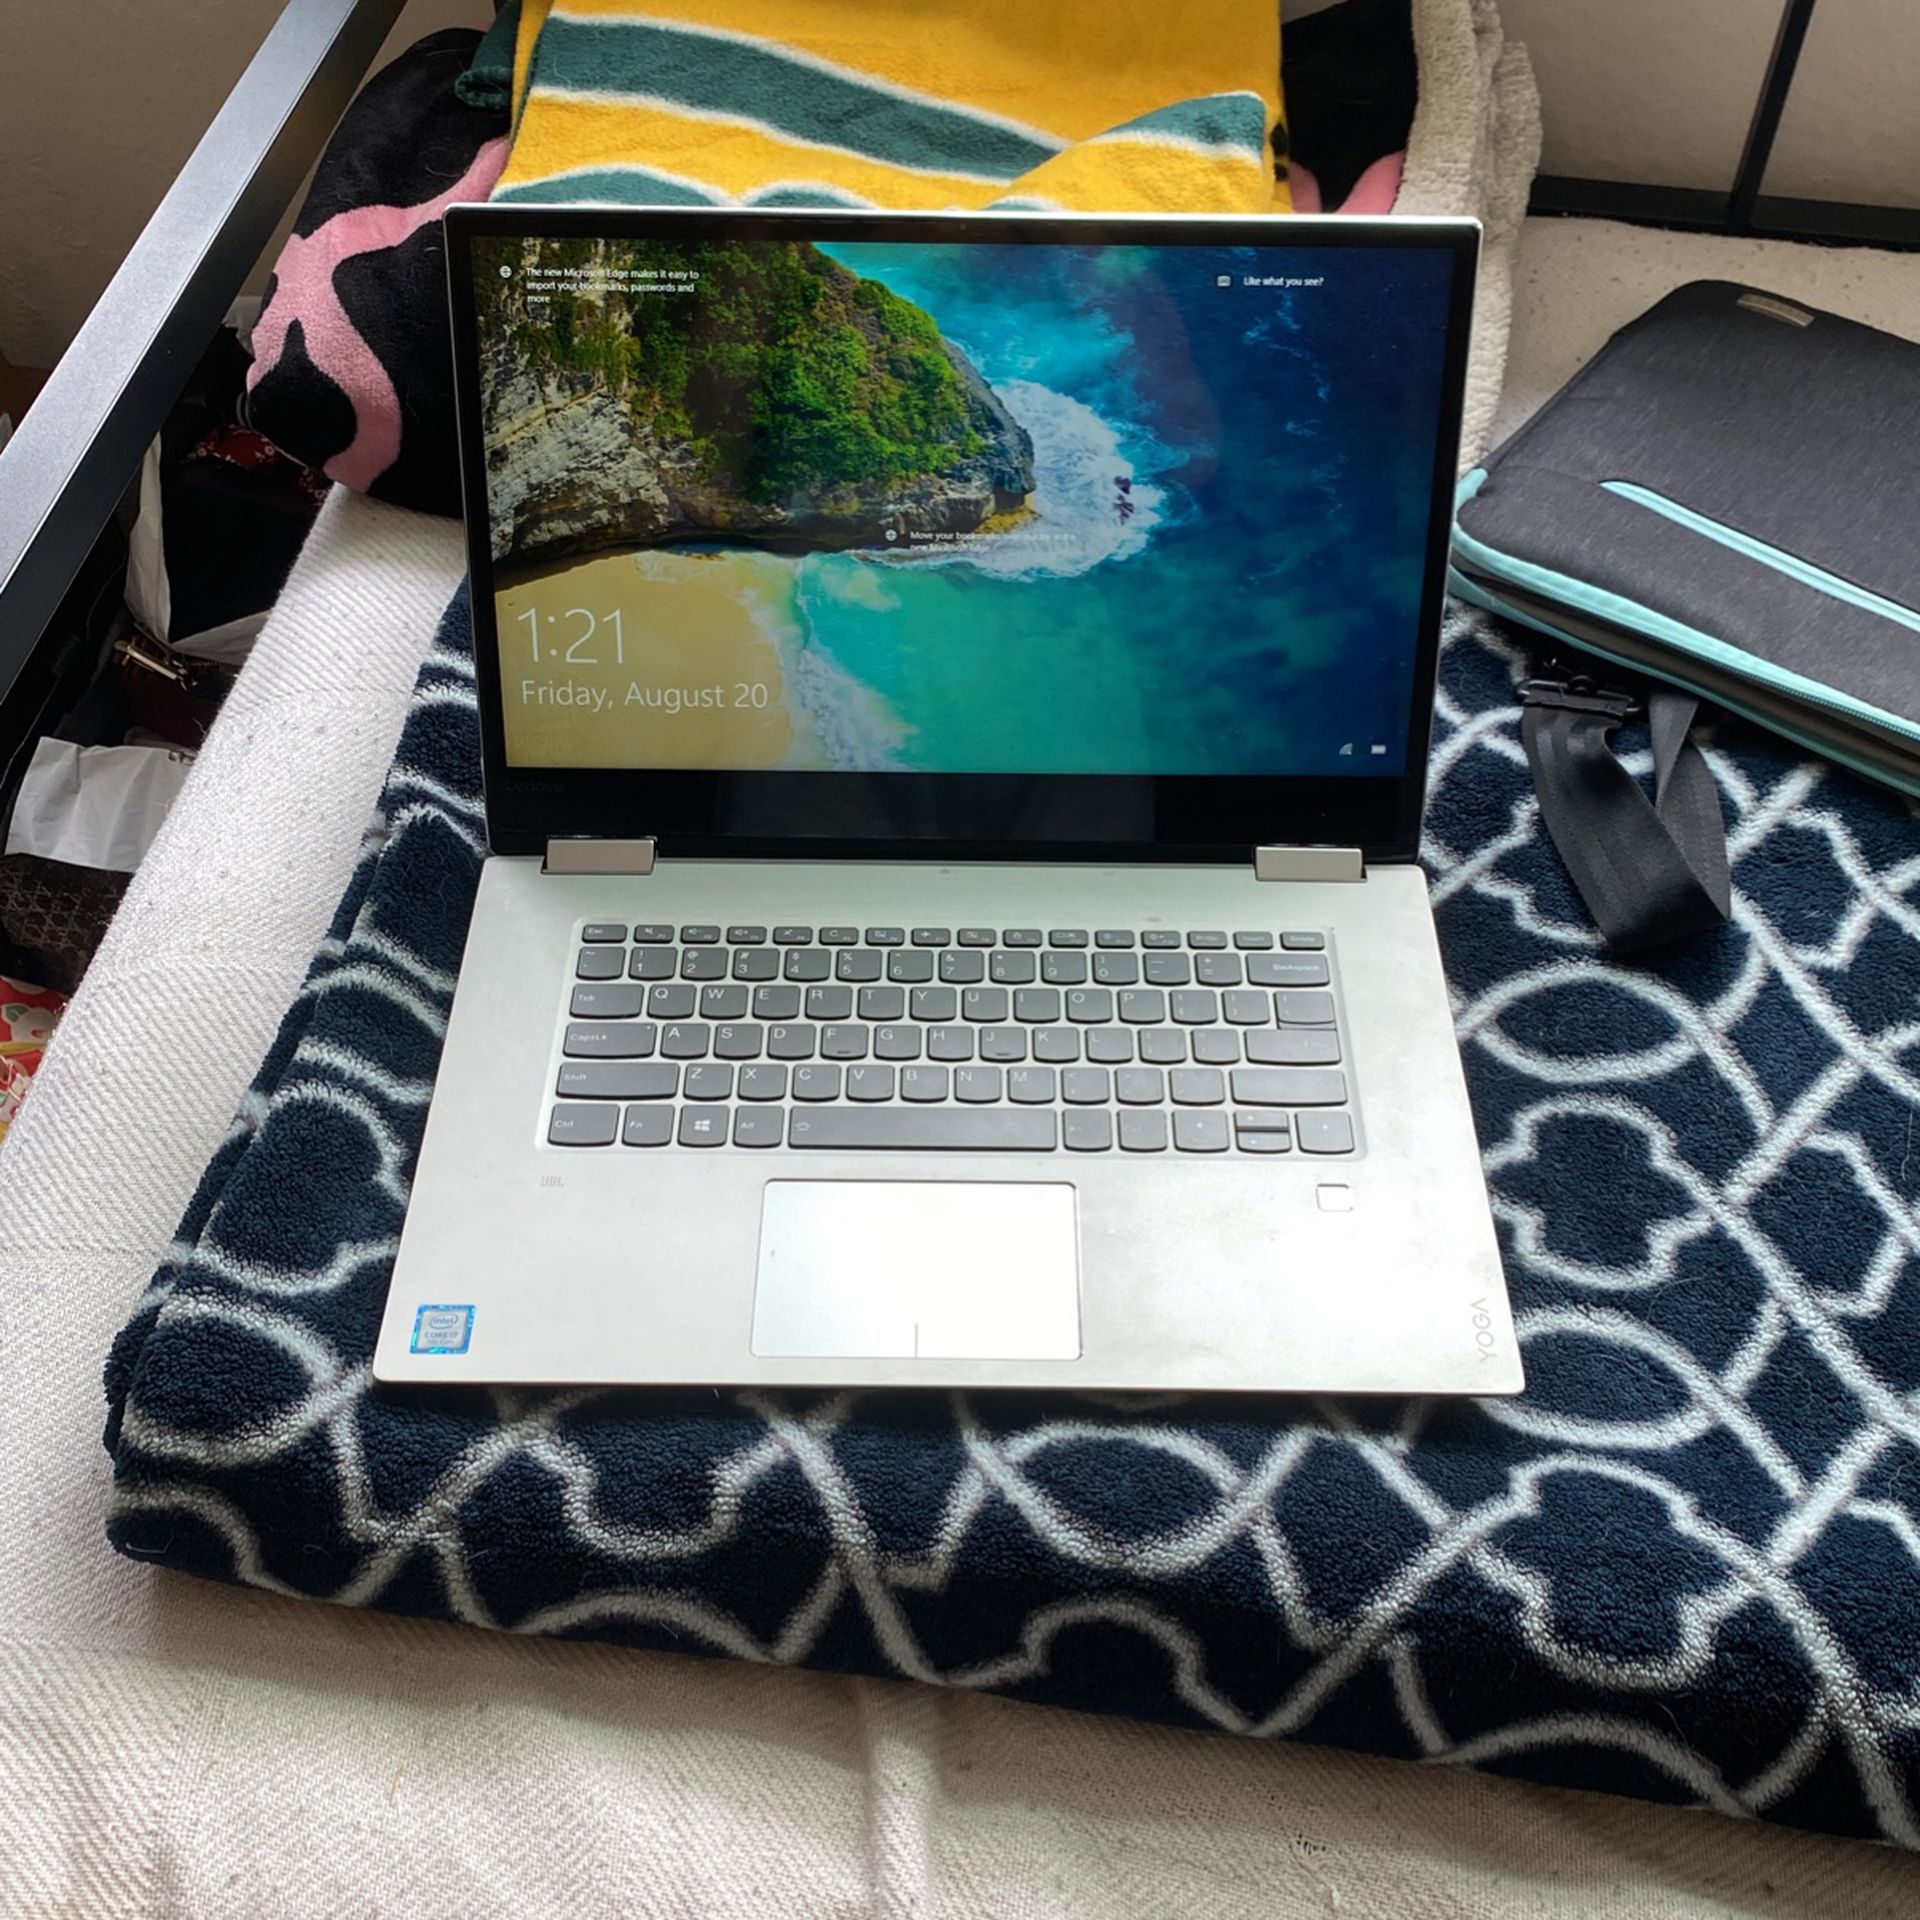 Lenovo Yoga 720 Laptop - $600 OBO